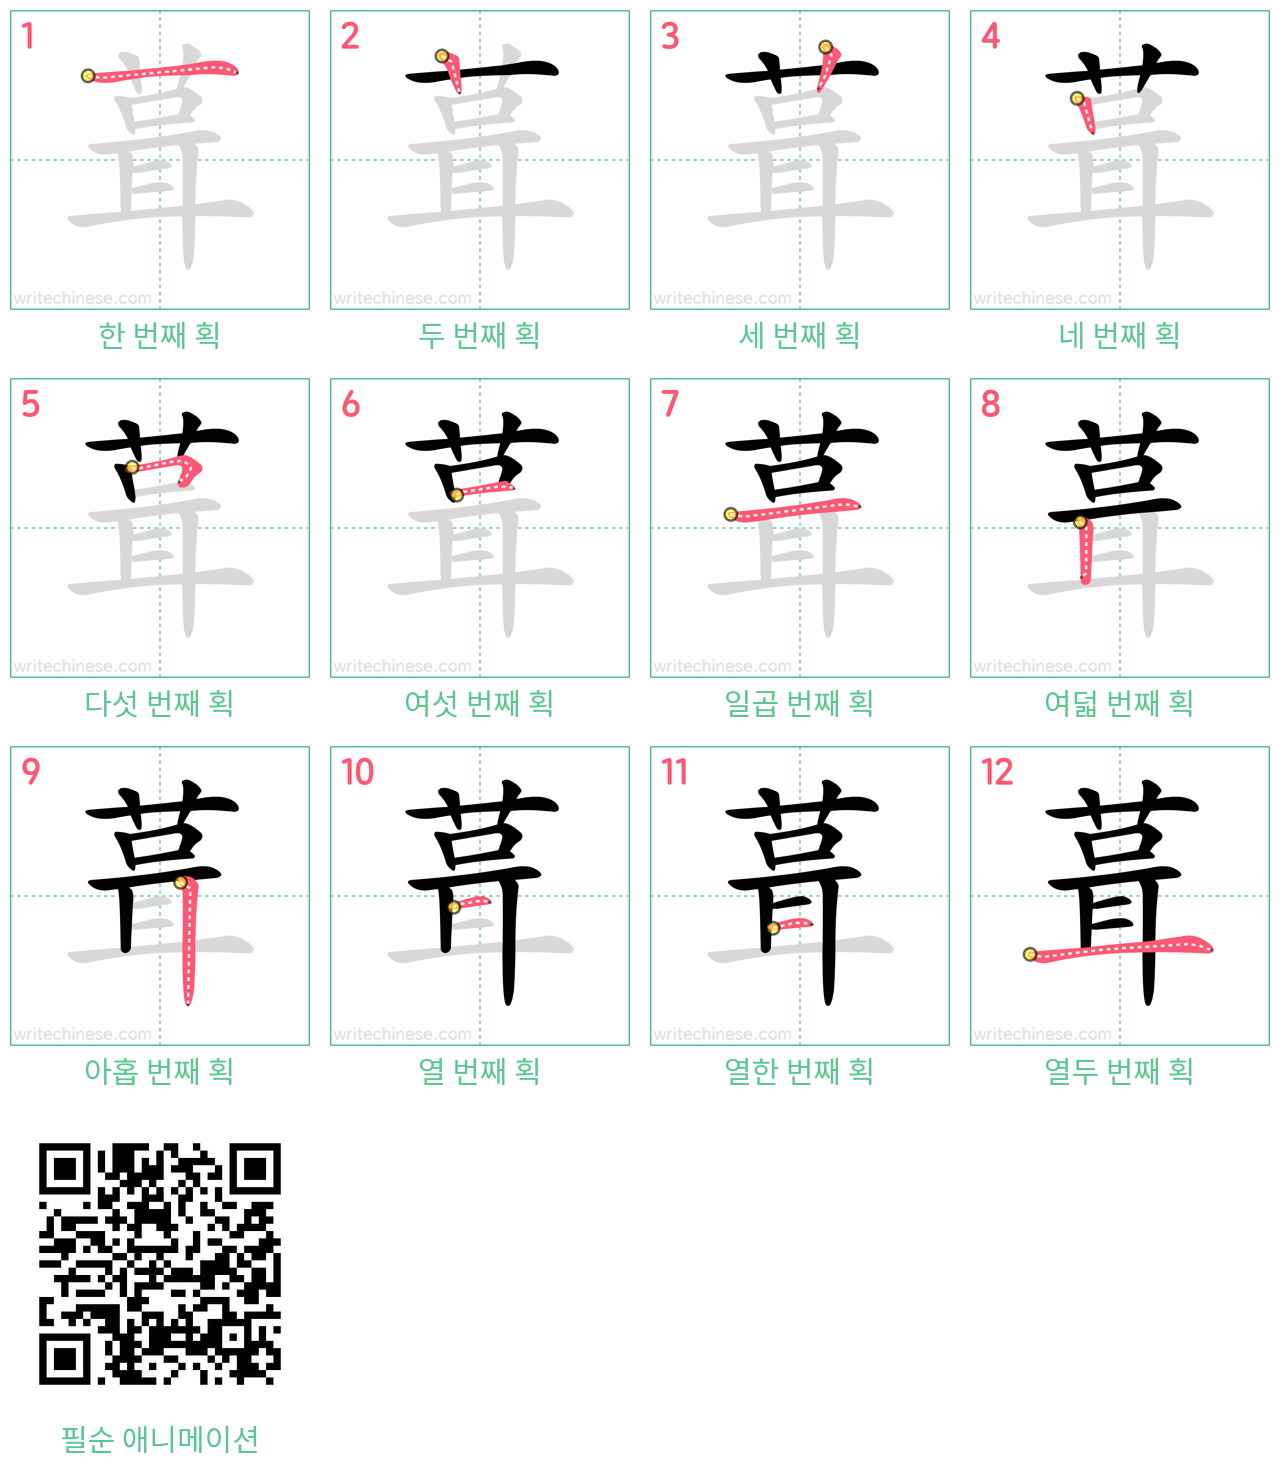 葺 step-by-step stroke order diagrams